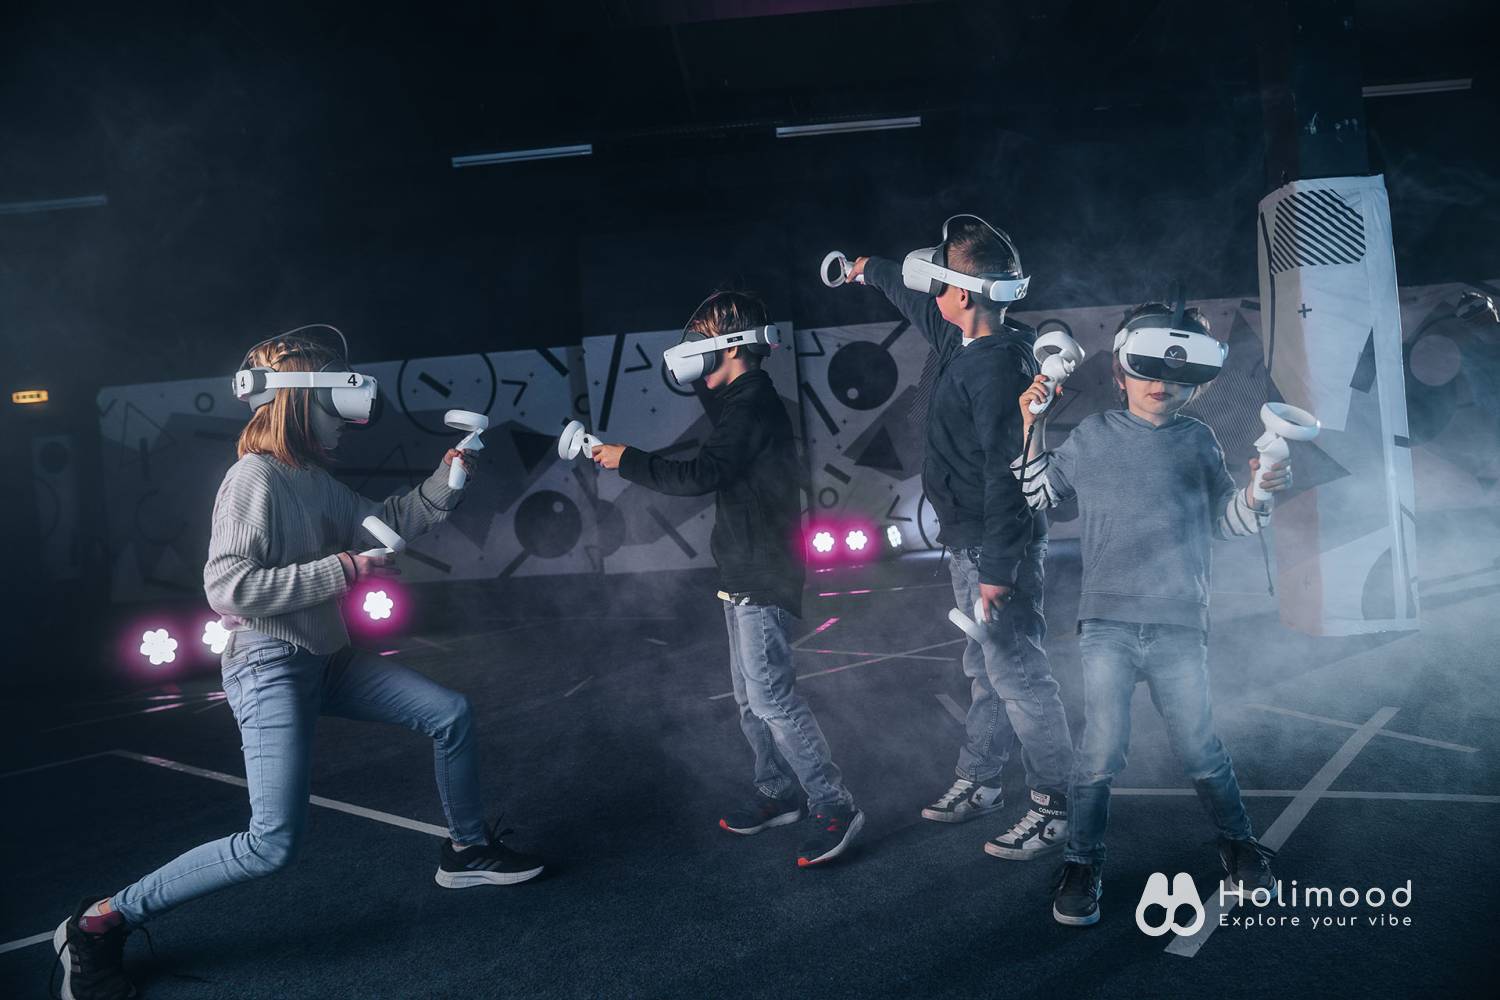 V-Owl Station VR Party 虛擬實境體驗站 【VR體驗】90分鐘特選VR故事遊戲 (送4D動感太空艙體驗) 15